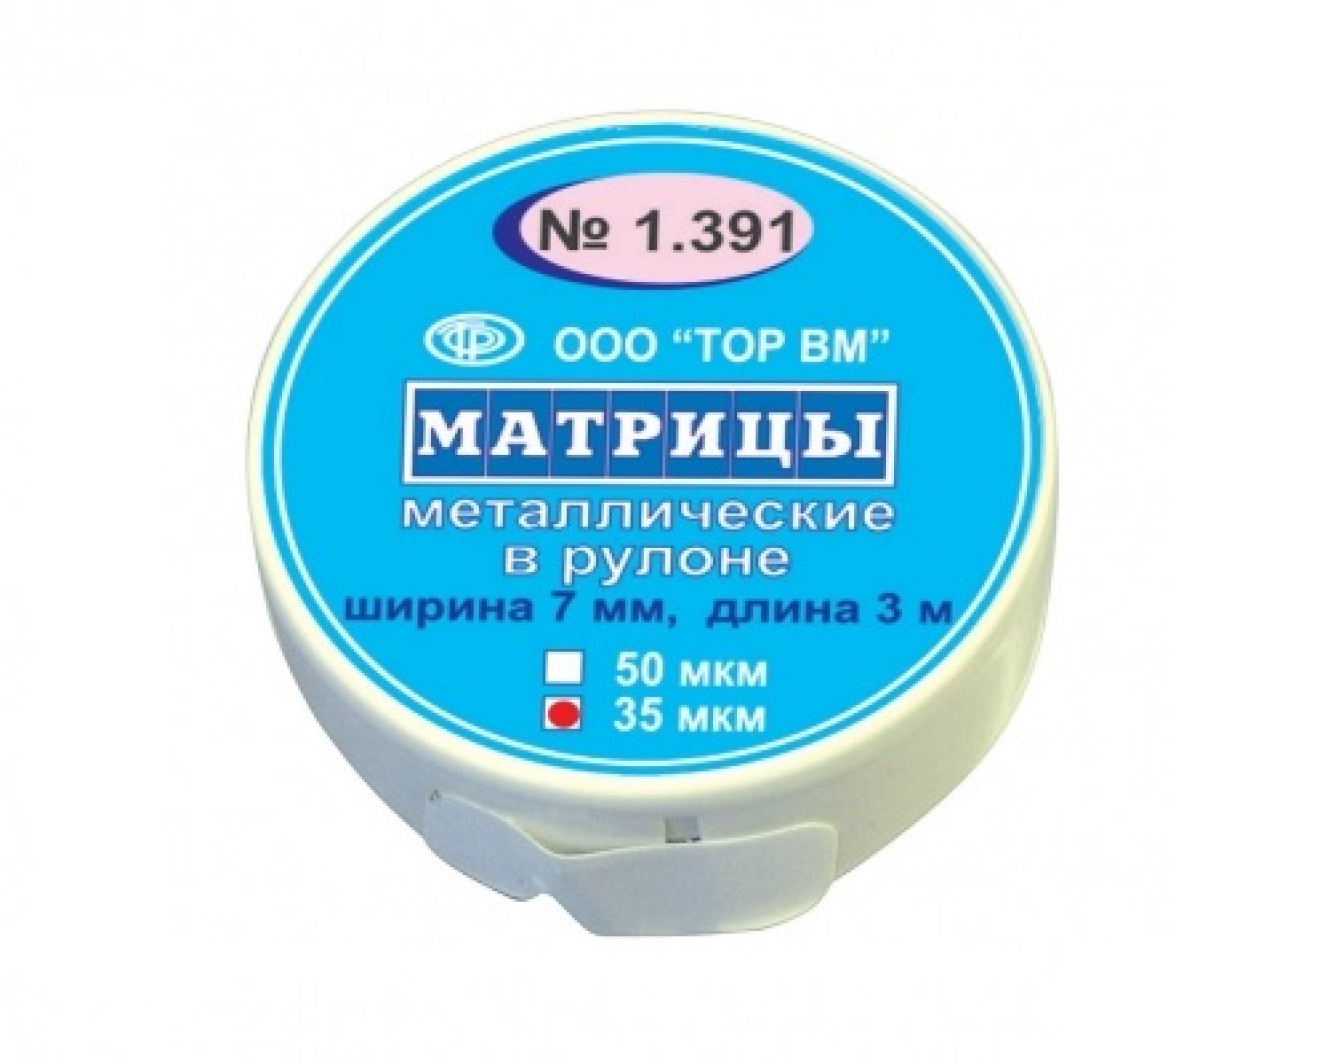 Матрицы металлические, в рулоне, 1.391, ТОР ВМ (Россия)